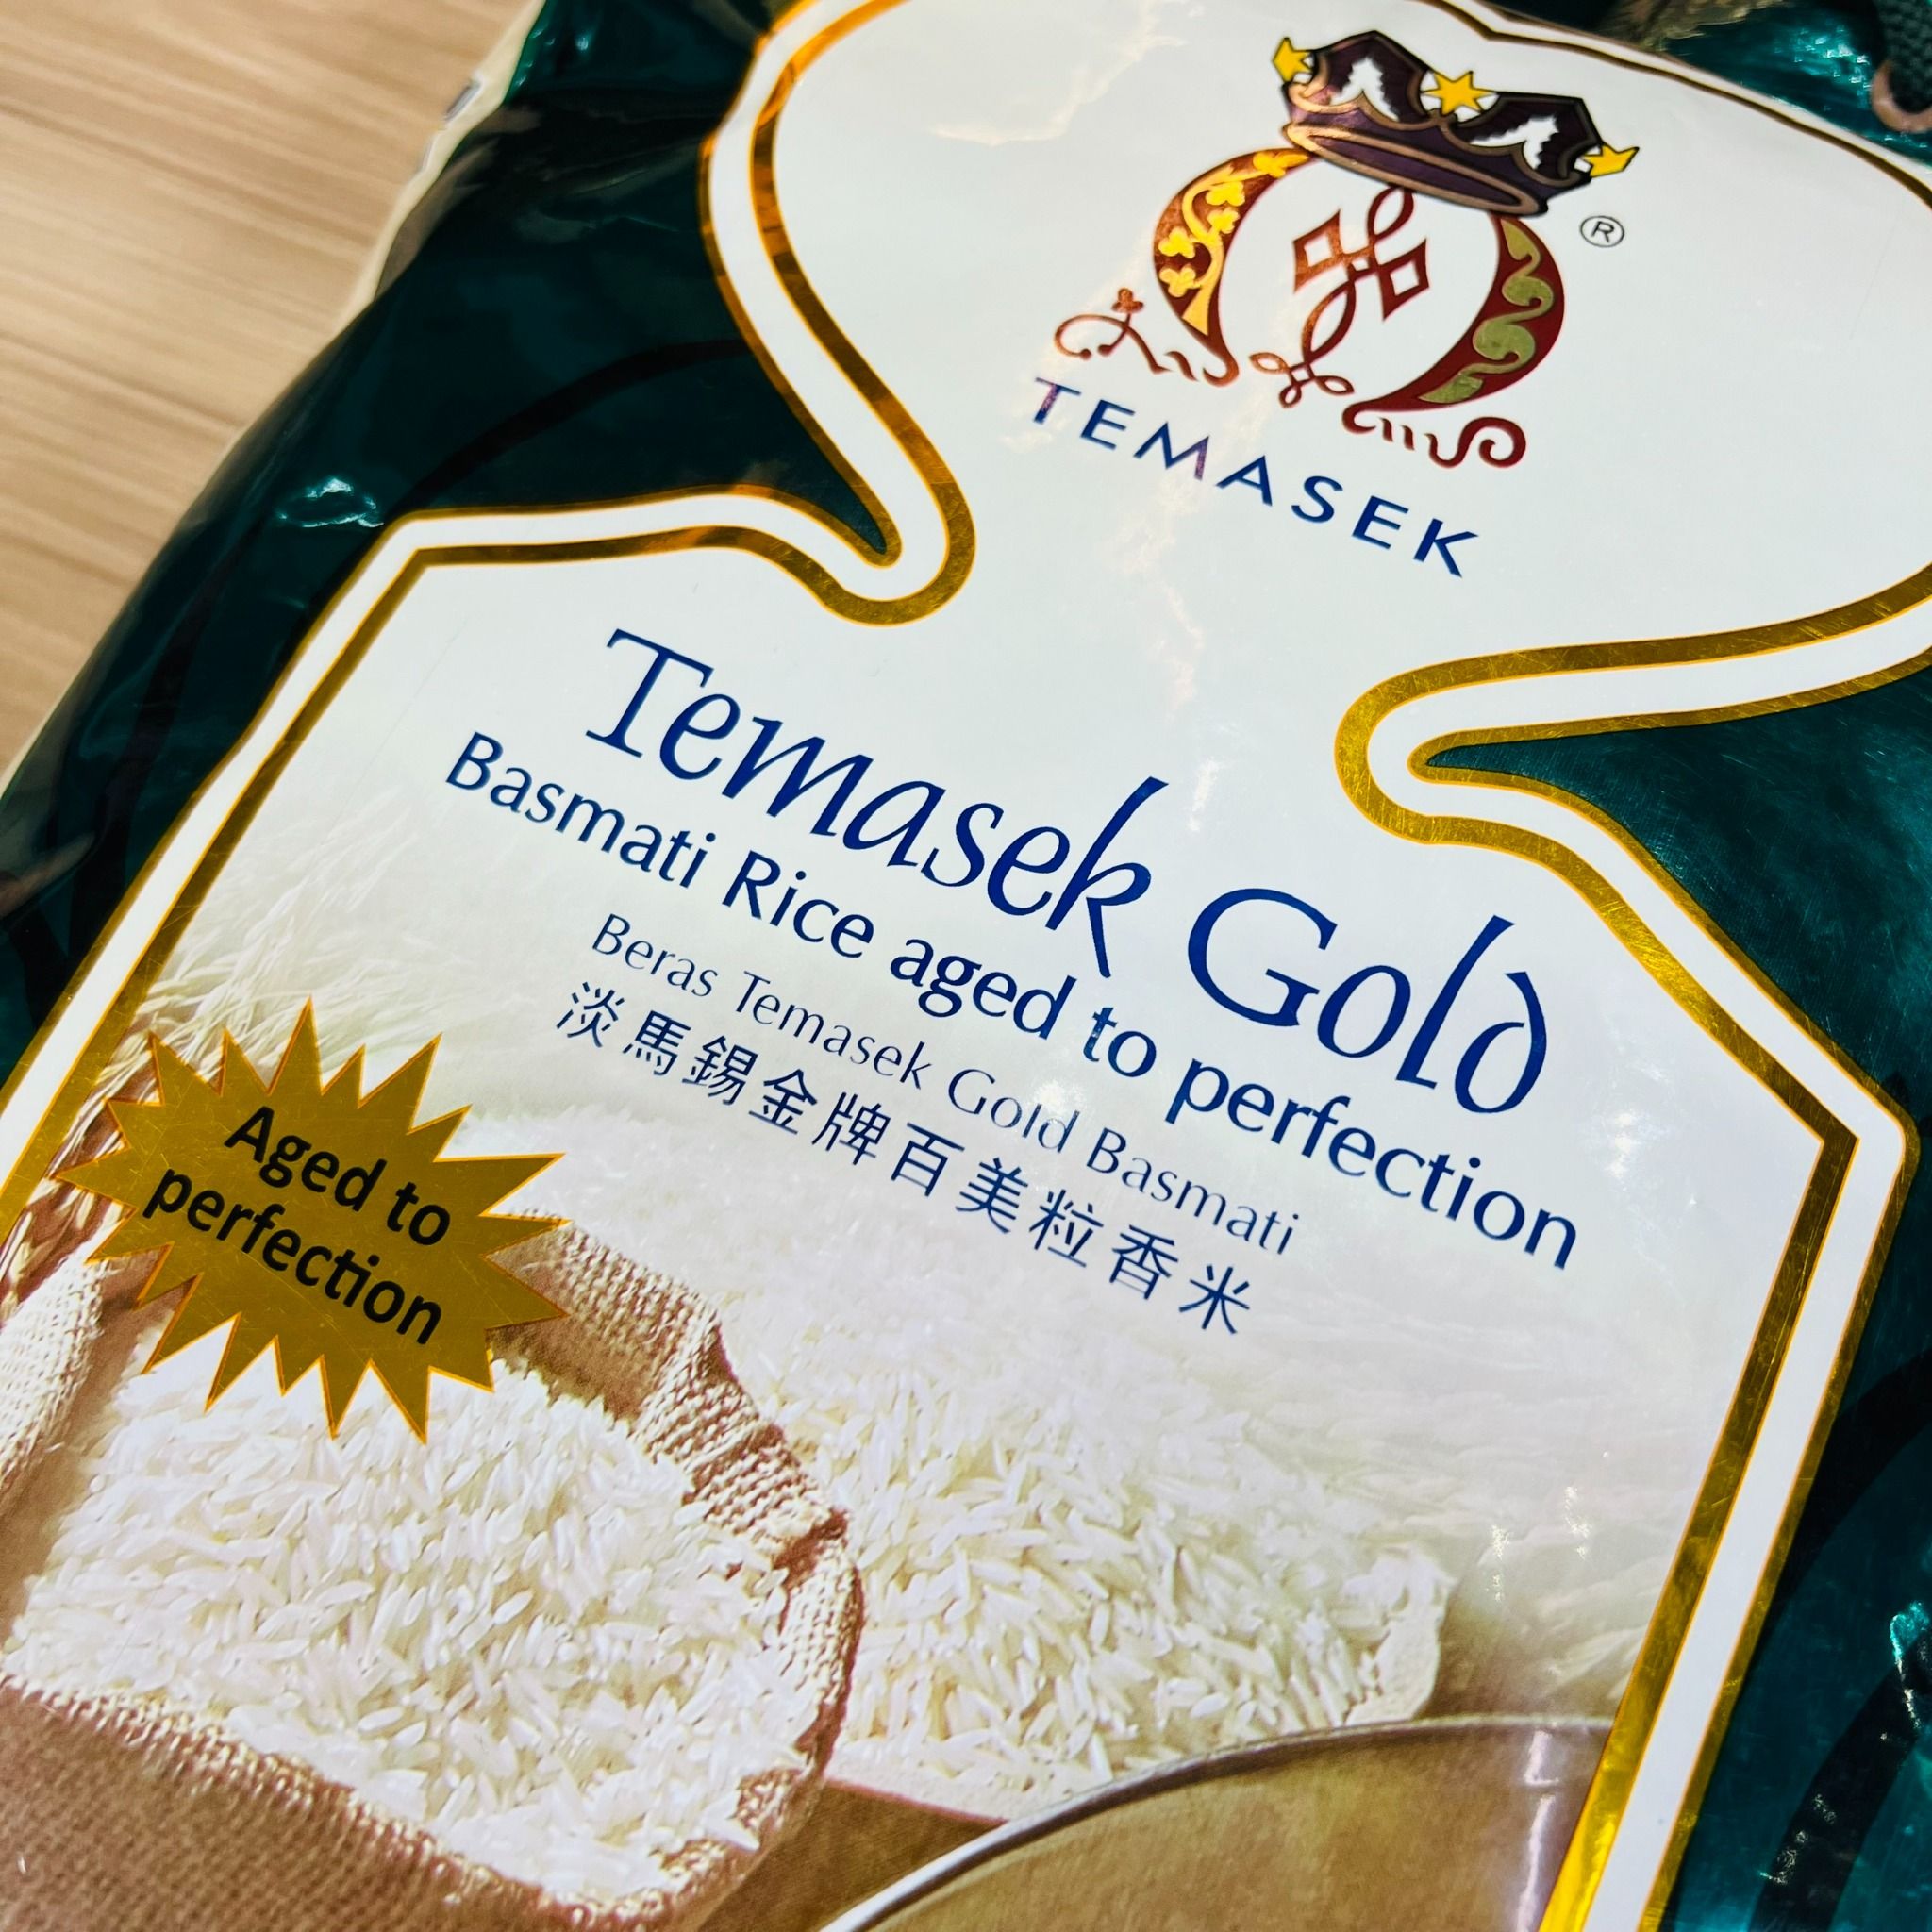 gao chuyen dac biet cho nguoi tieu duong an do temasek low gi basmati rice gold 5kg